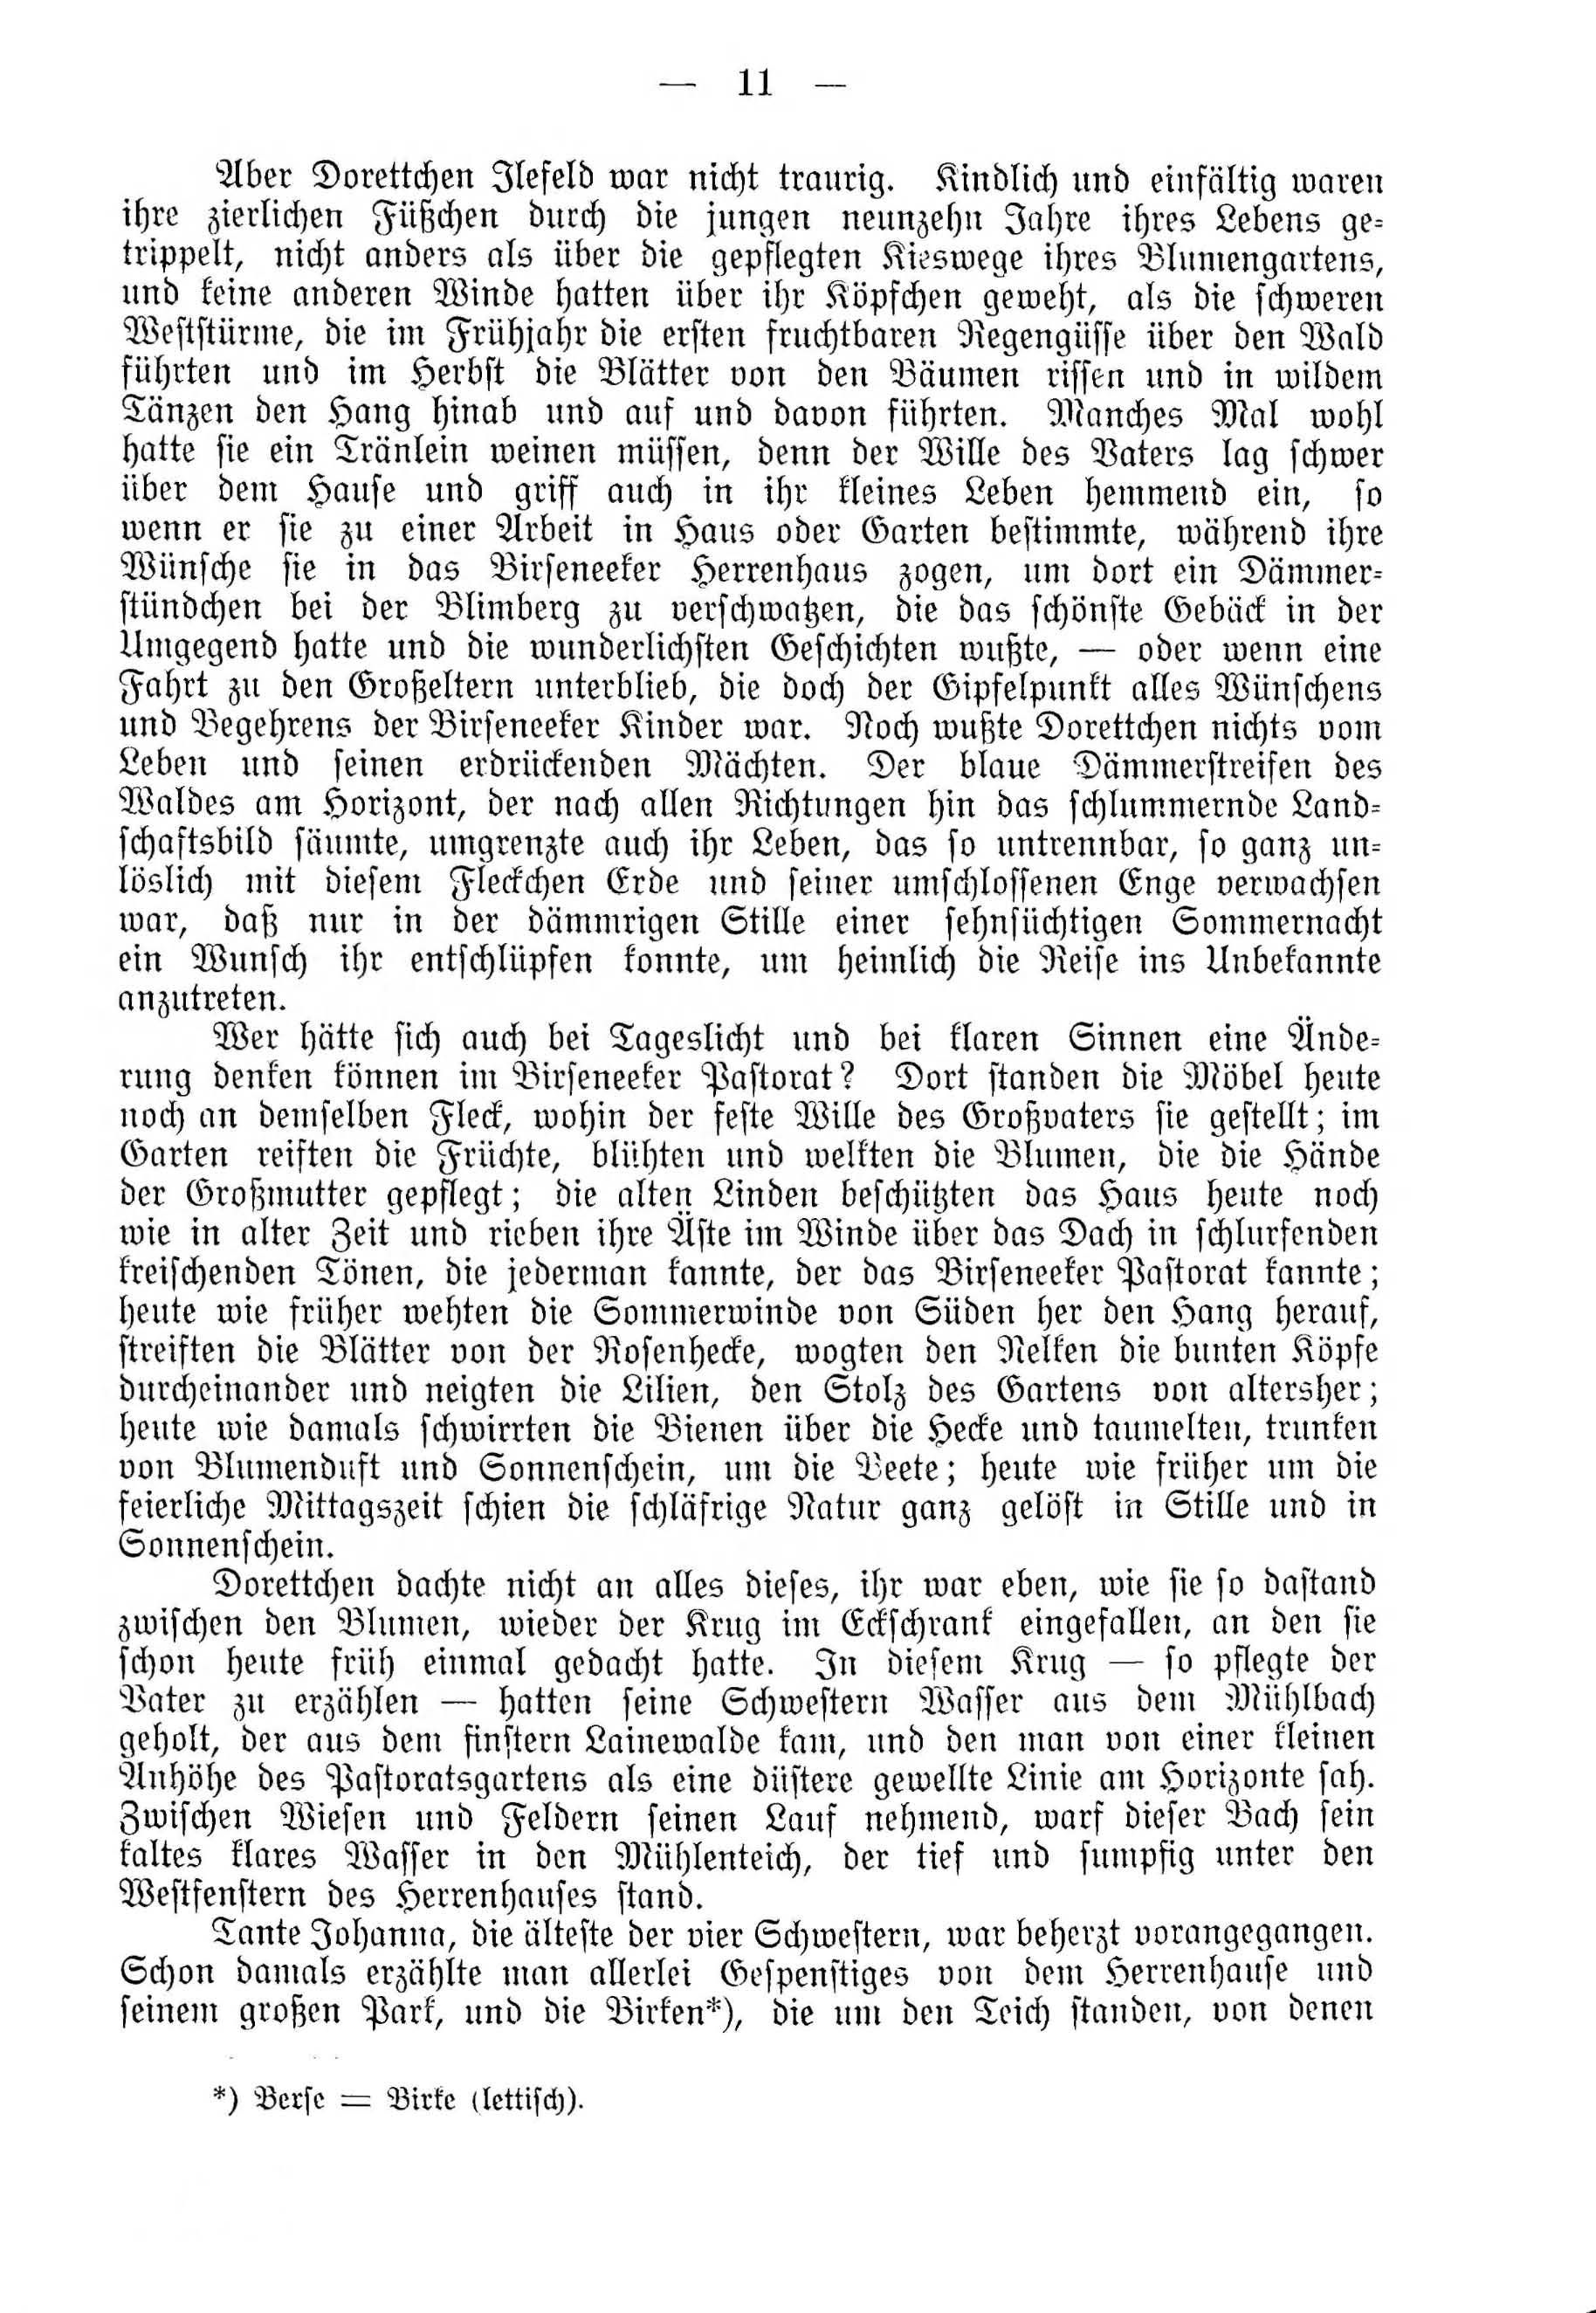 Deutsche Monatsschrift für Russland [4] (1915) | 11. (11) Main body of text